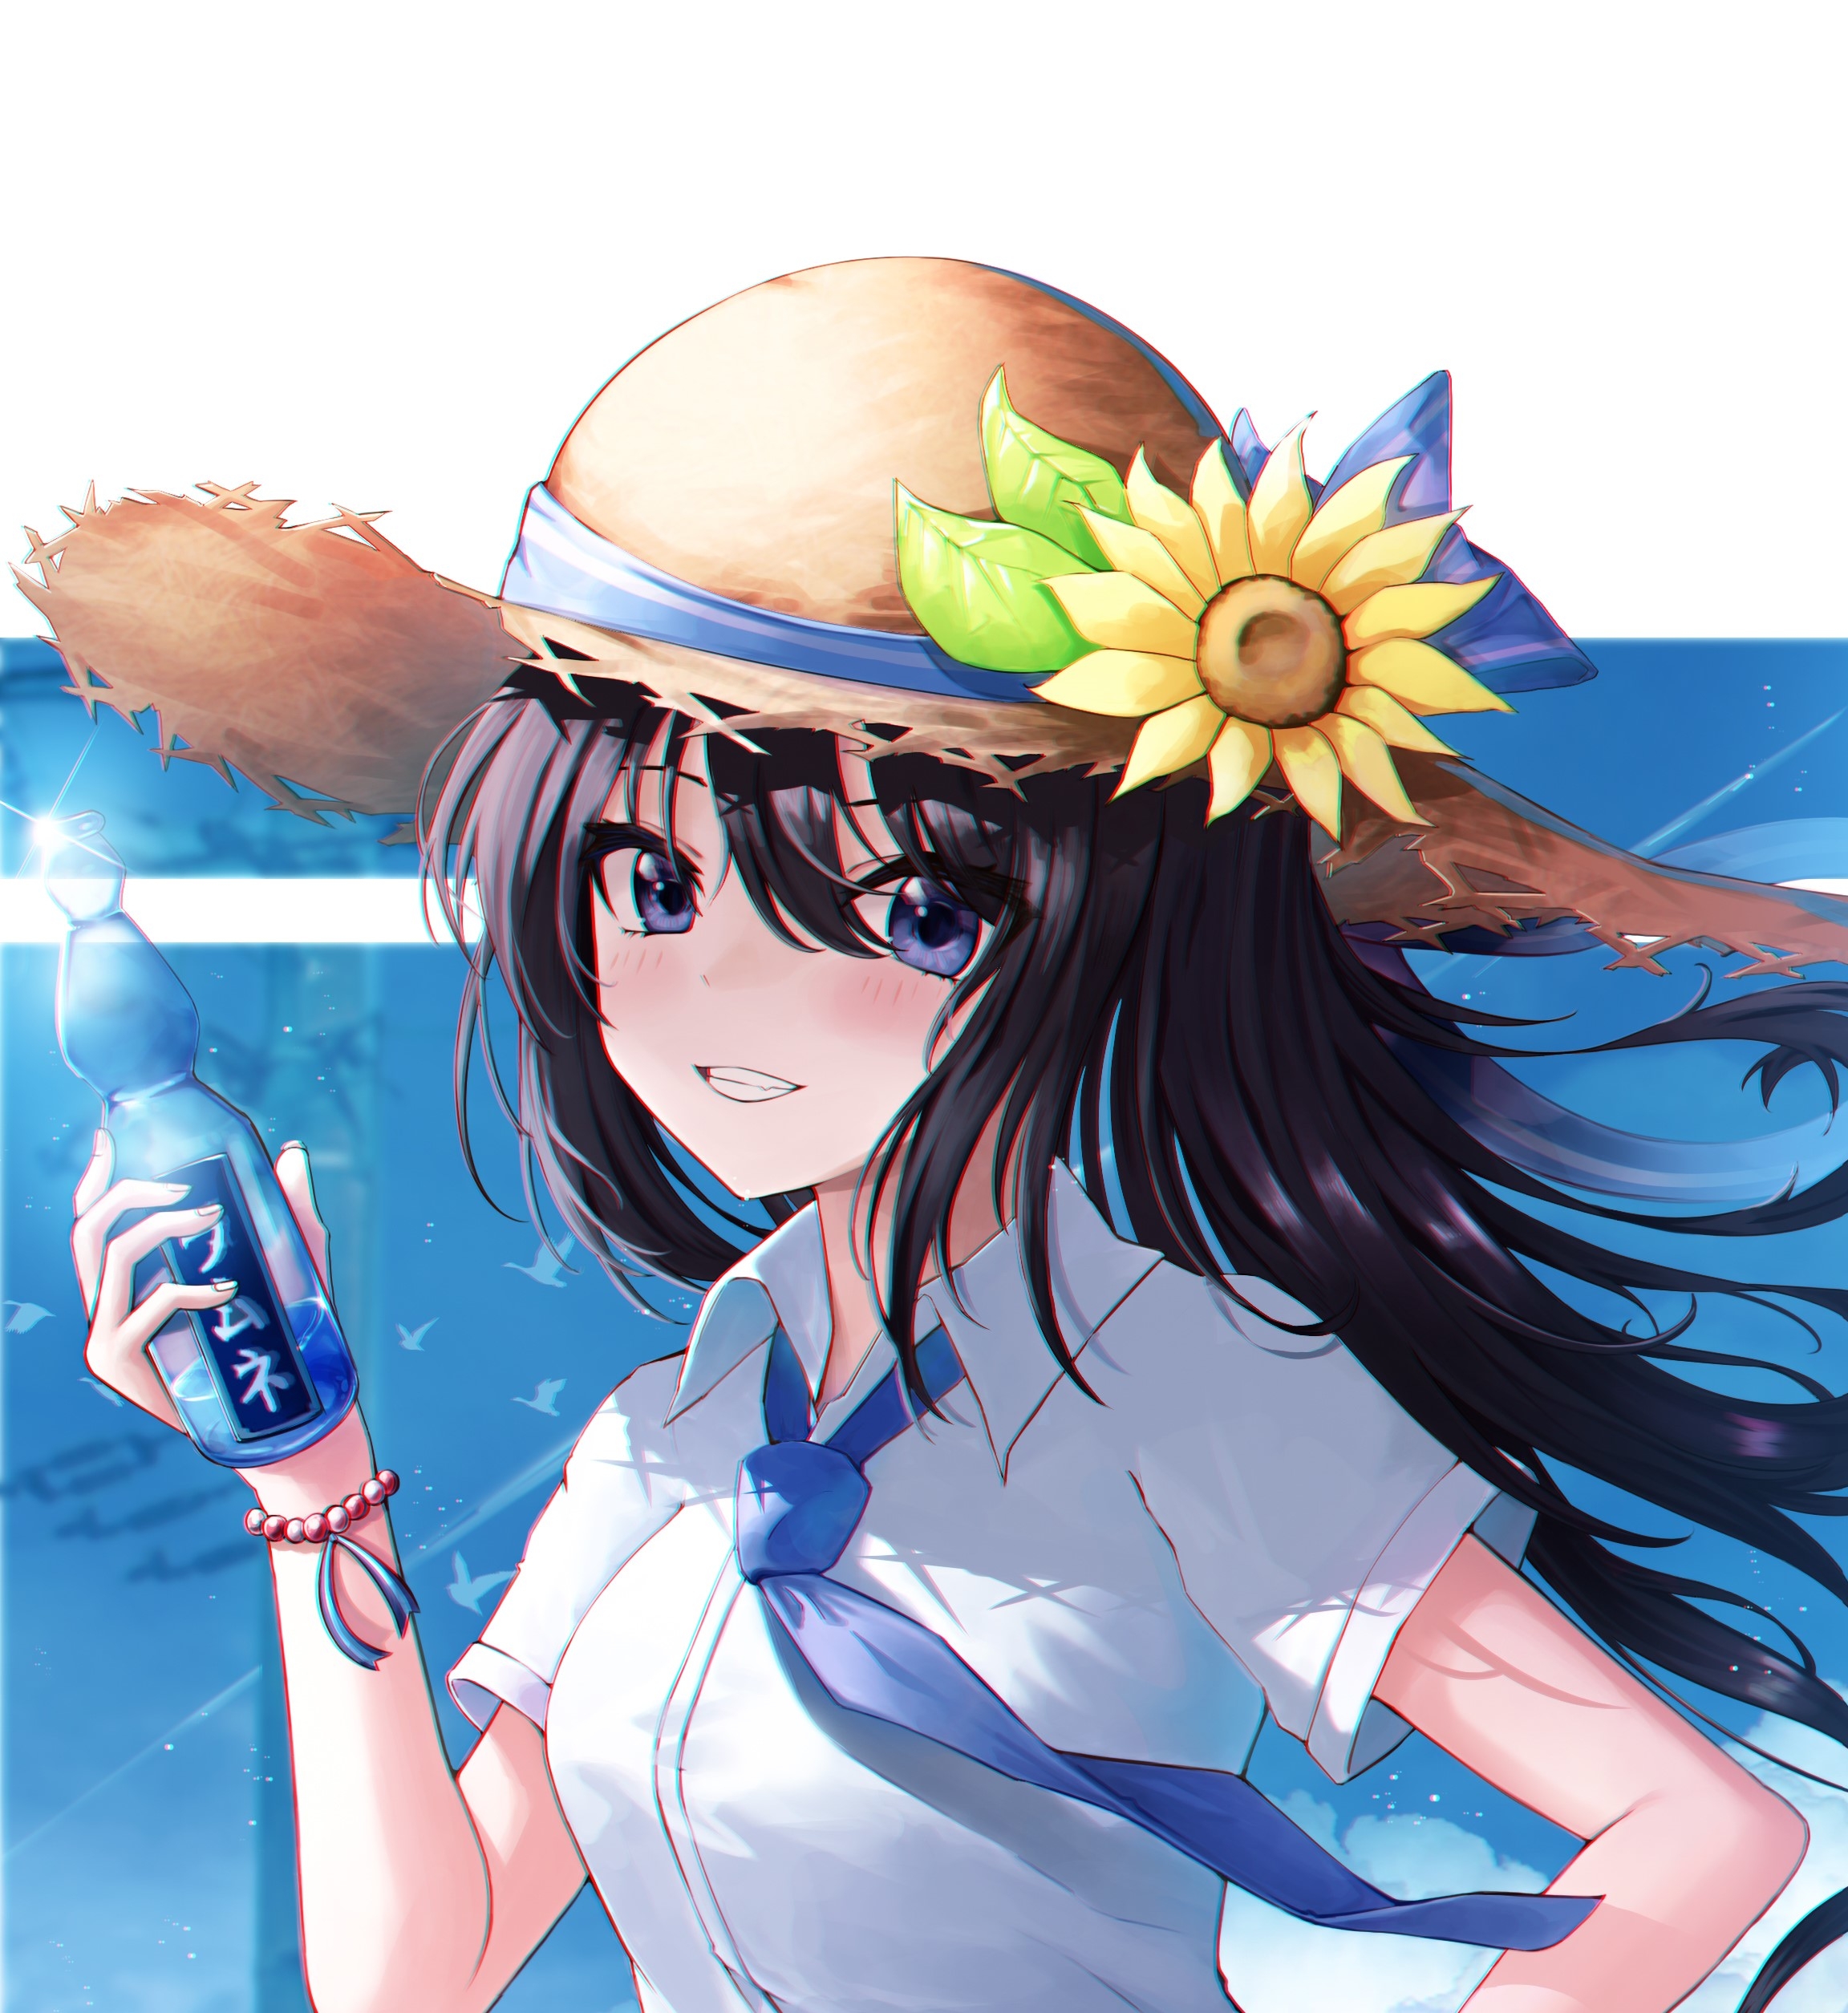 Anime 2304x2510 dark hair blue eyes sunflowers straw hat long hair bracelets water bottle birds white shirt tie smiling anime girls